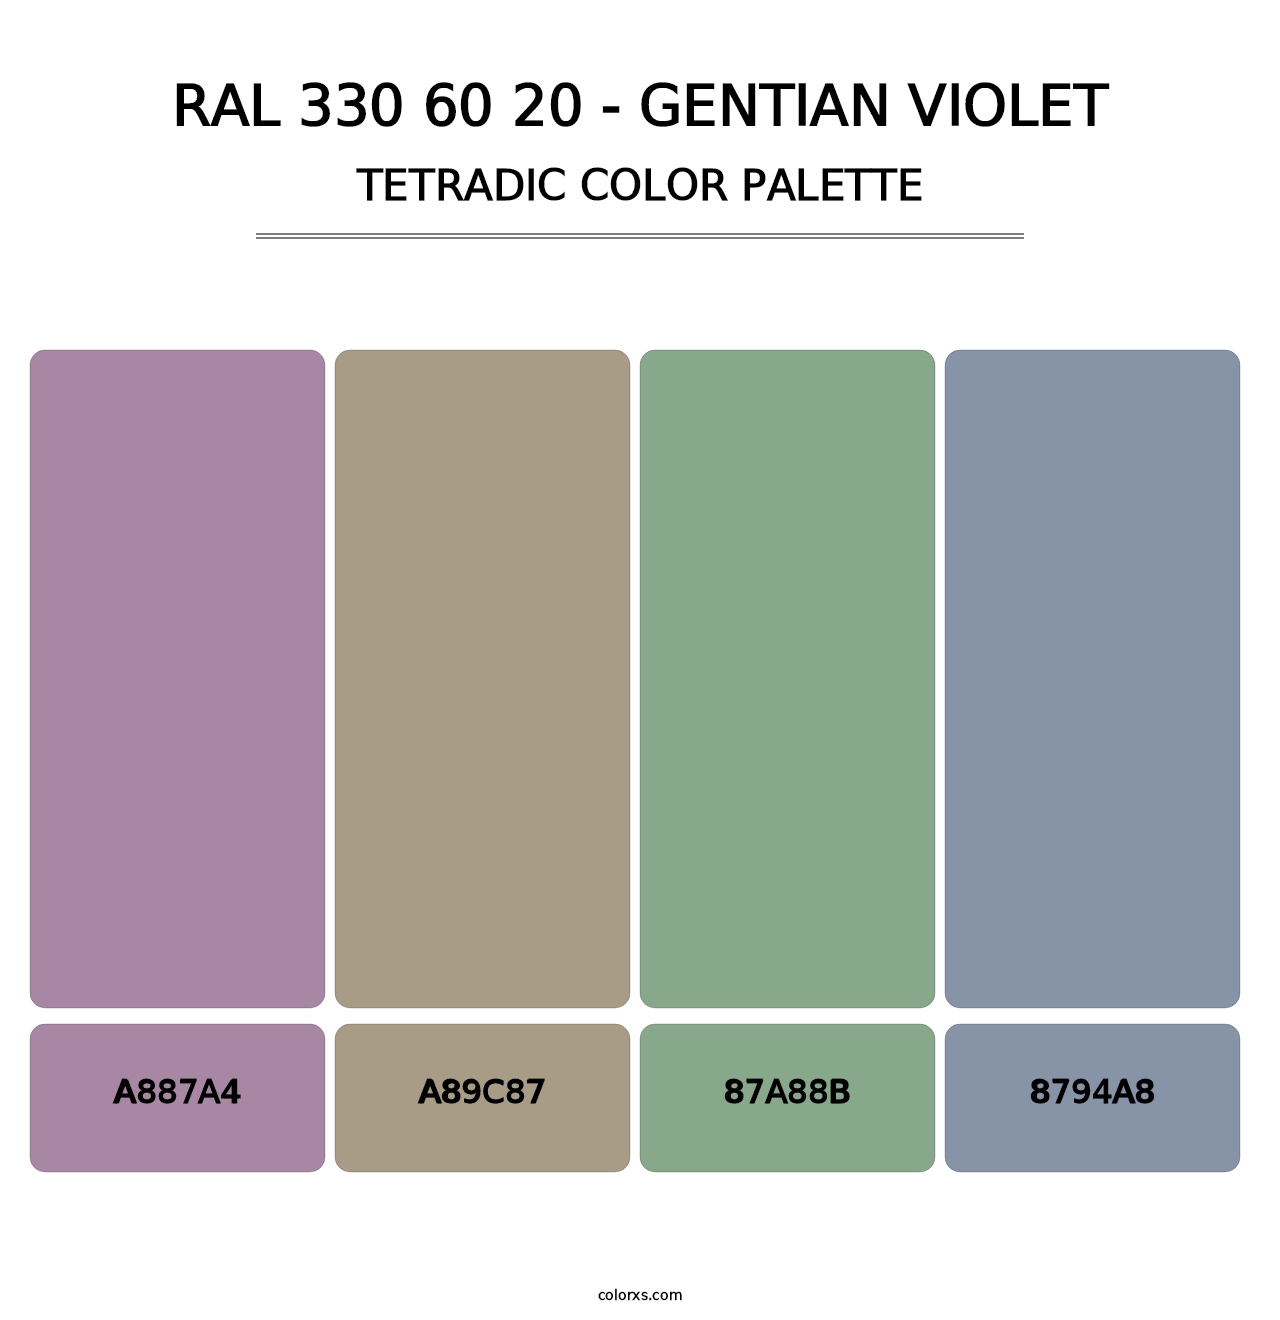 RAL 330 60 20 - Gentian Violet - Tetradic Color Palette